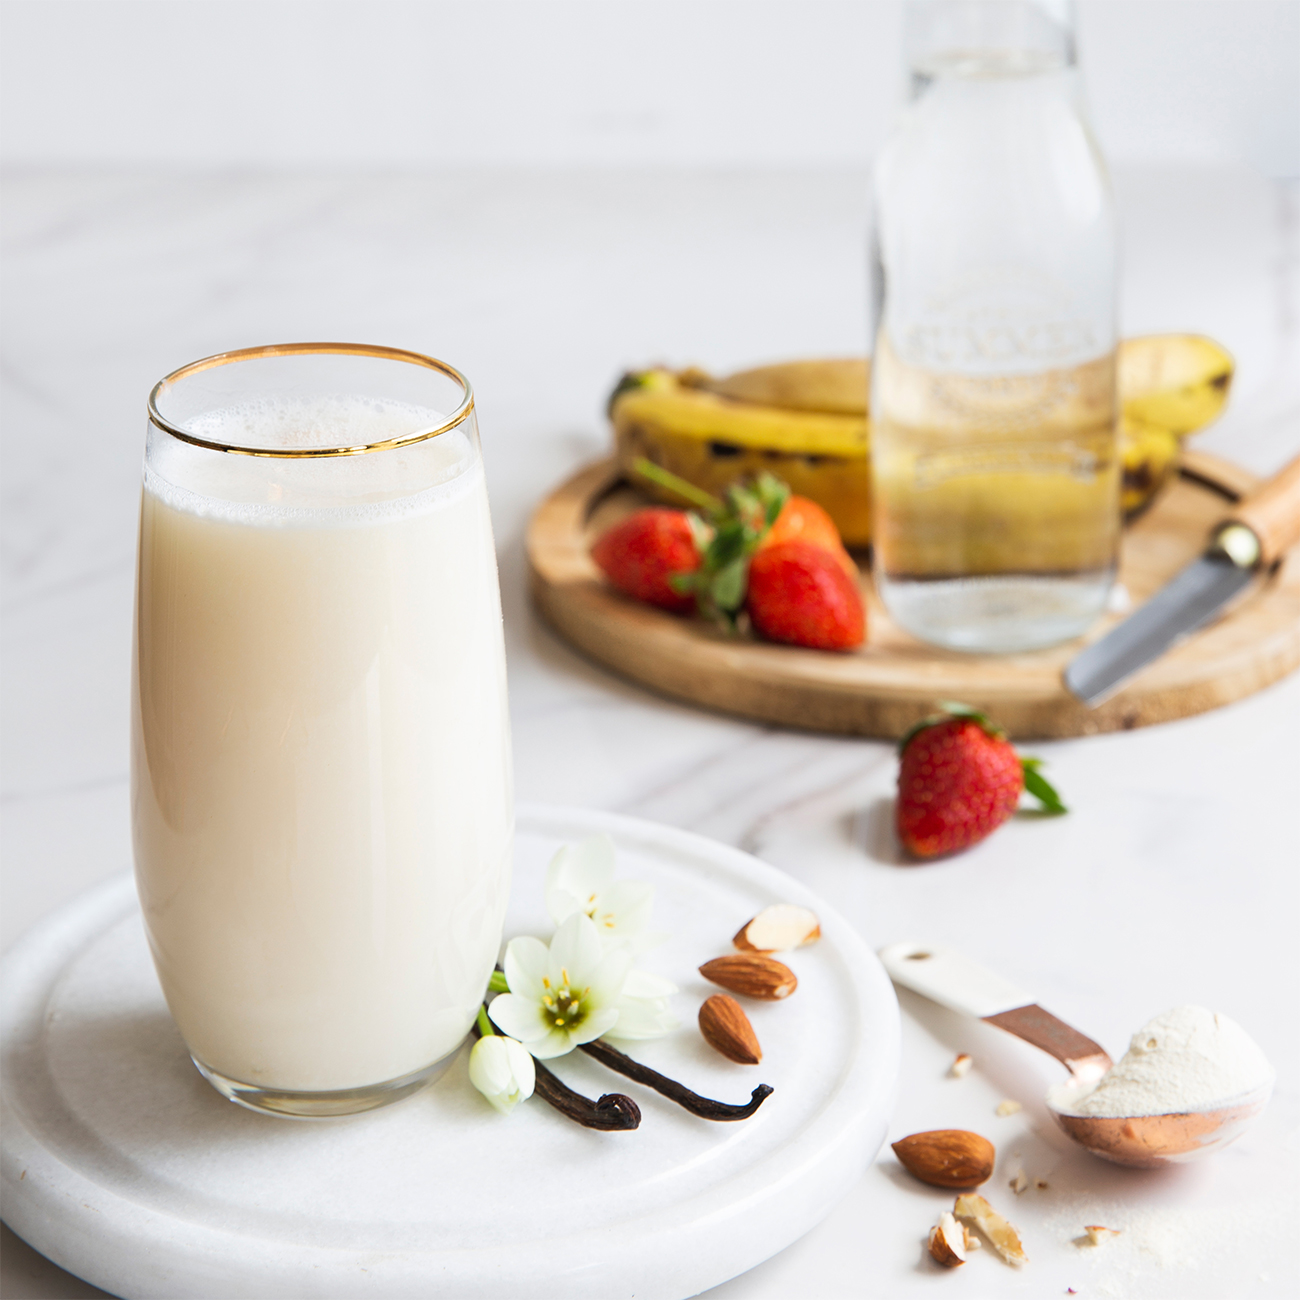 herbalife nutrition vanilkový proteínový koktail v pohári s cerstvým ovocím a mandlami.